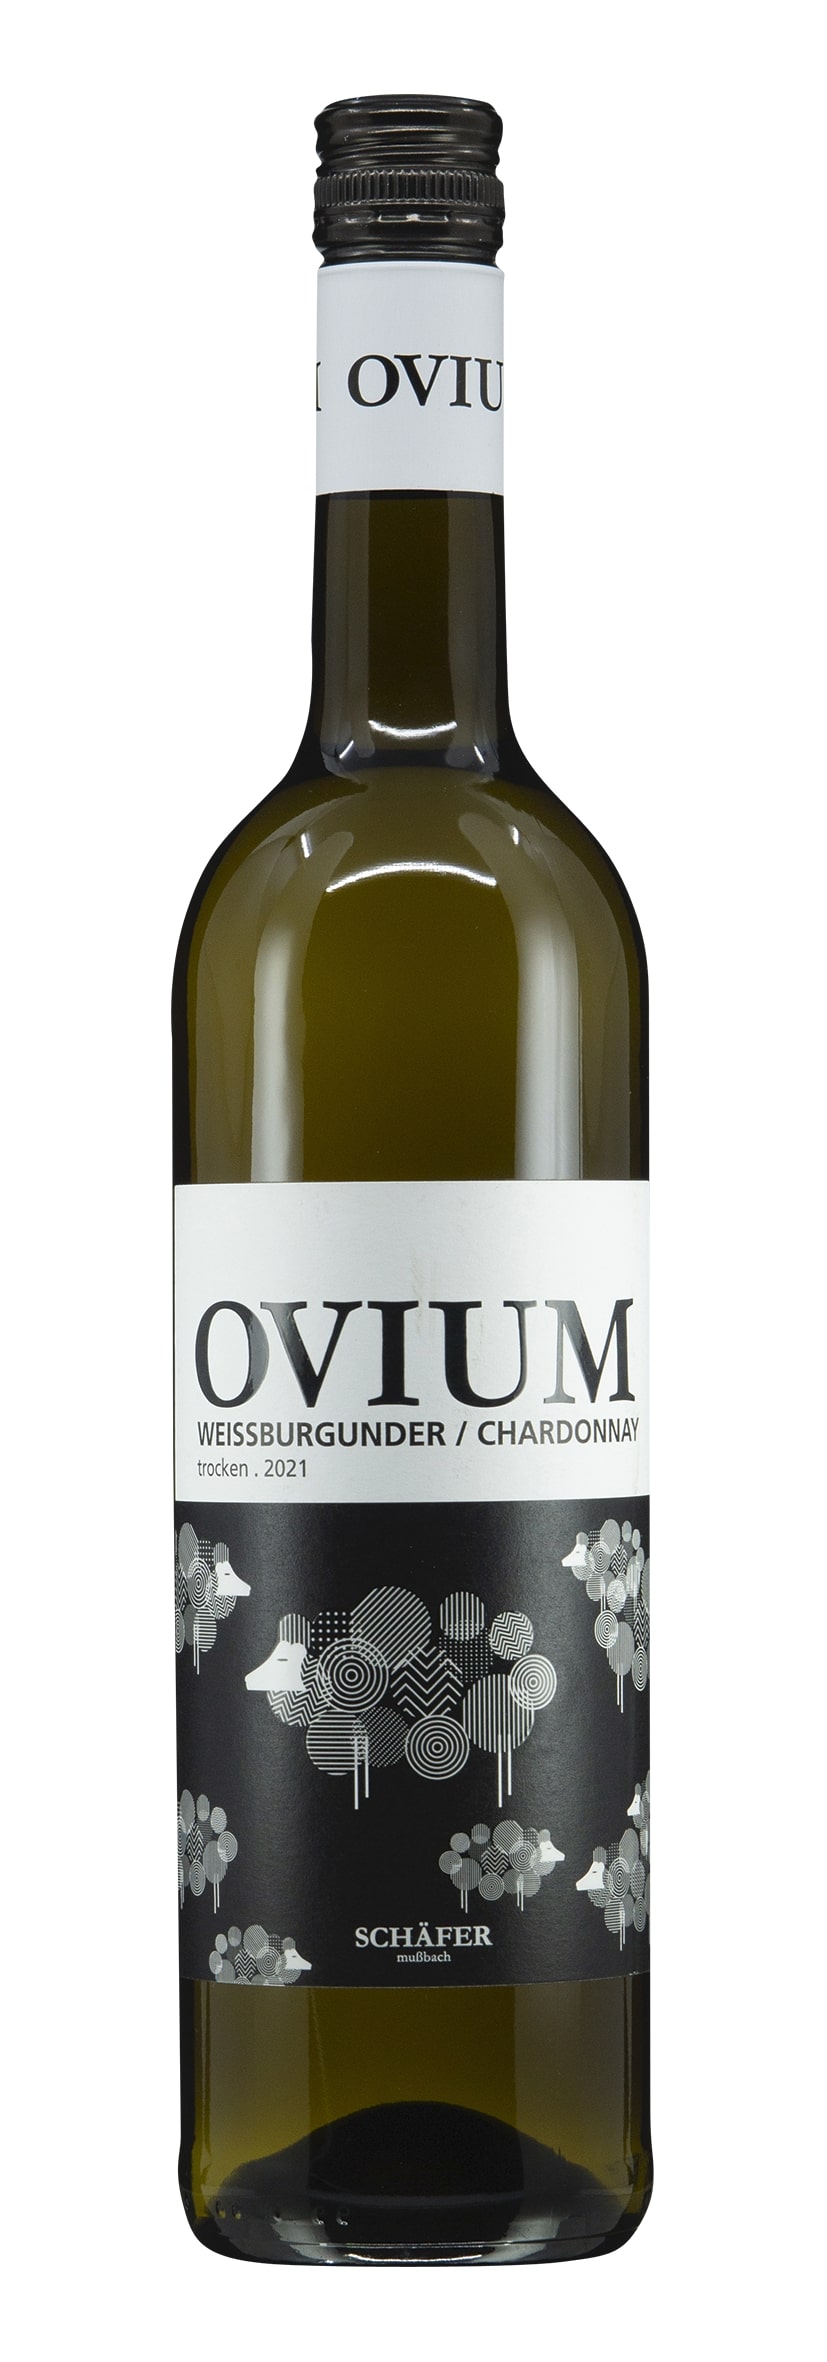 Pfalz Weissburgunder / Chardonnay Ovium 2021